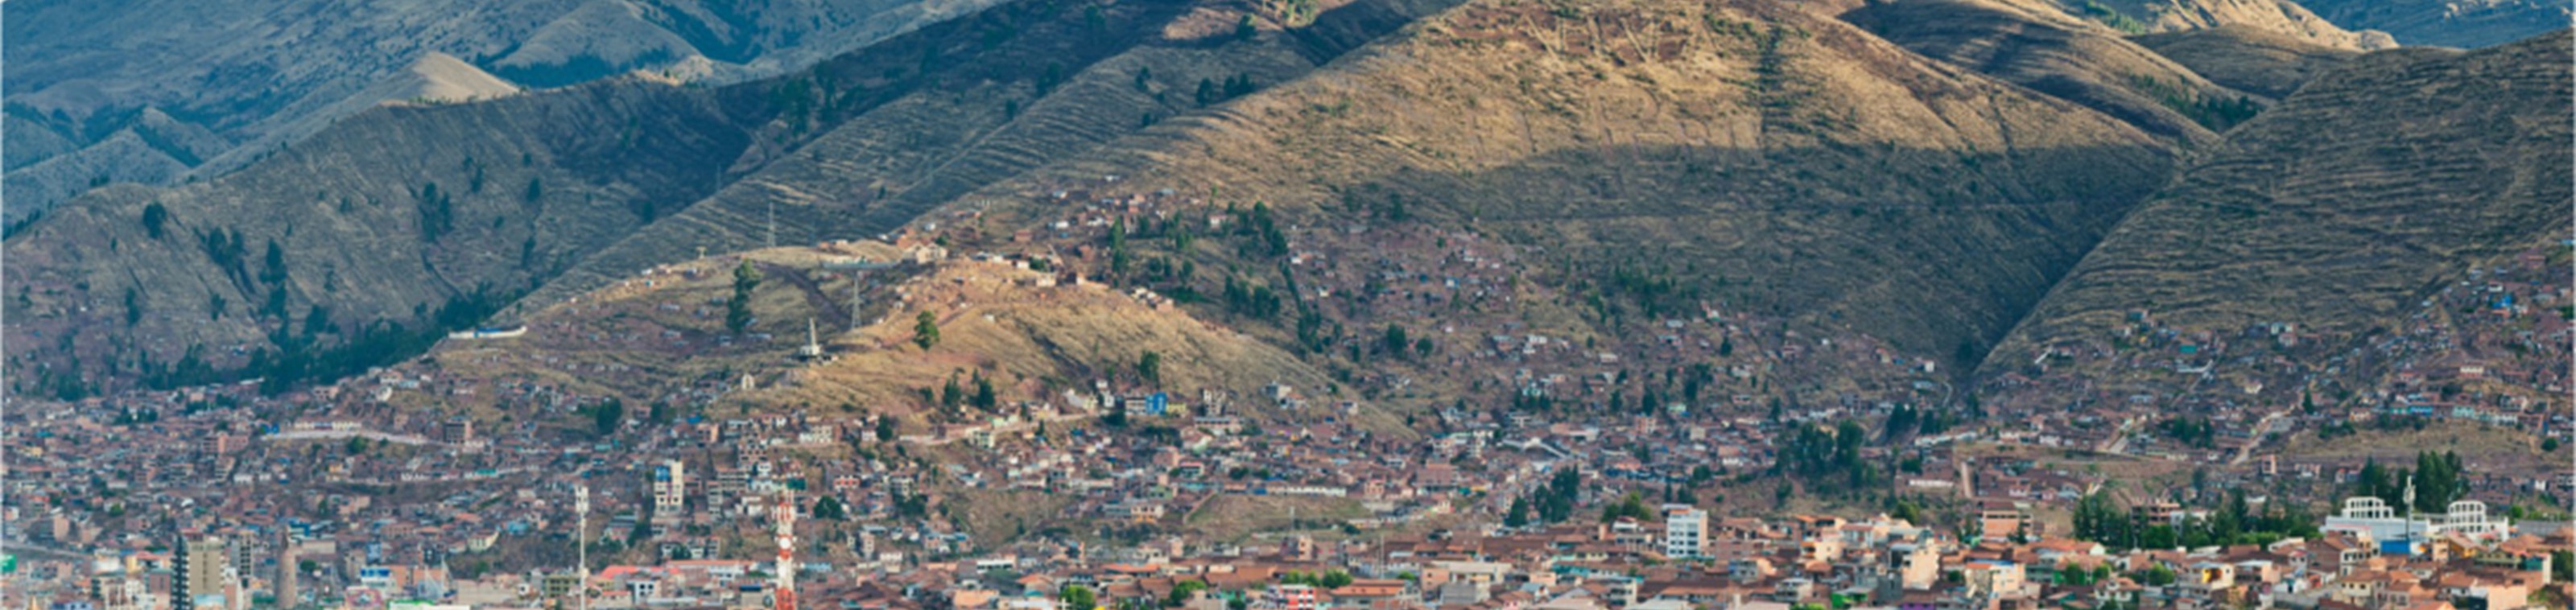 BEGELEIDE RONDREIS PERU: Wonderen van de Andes